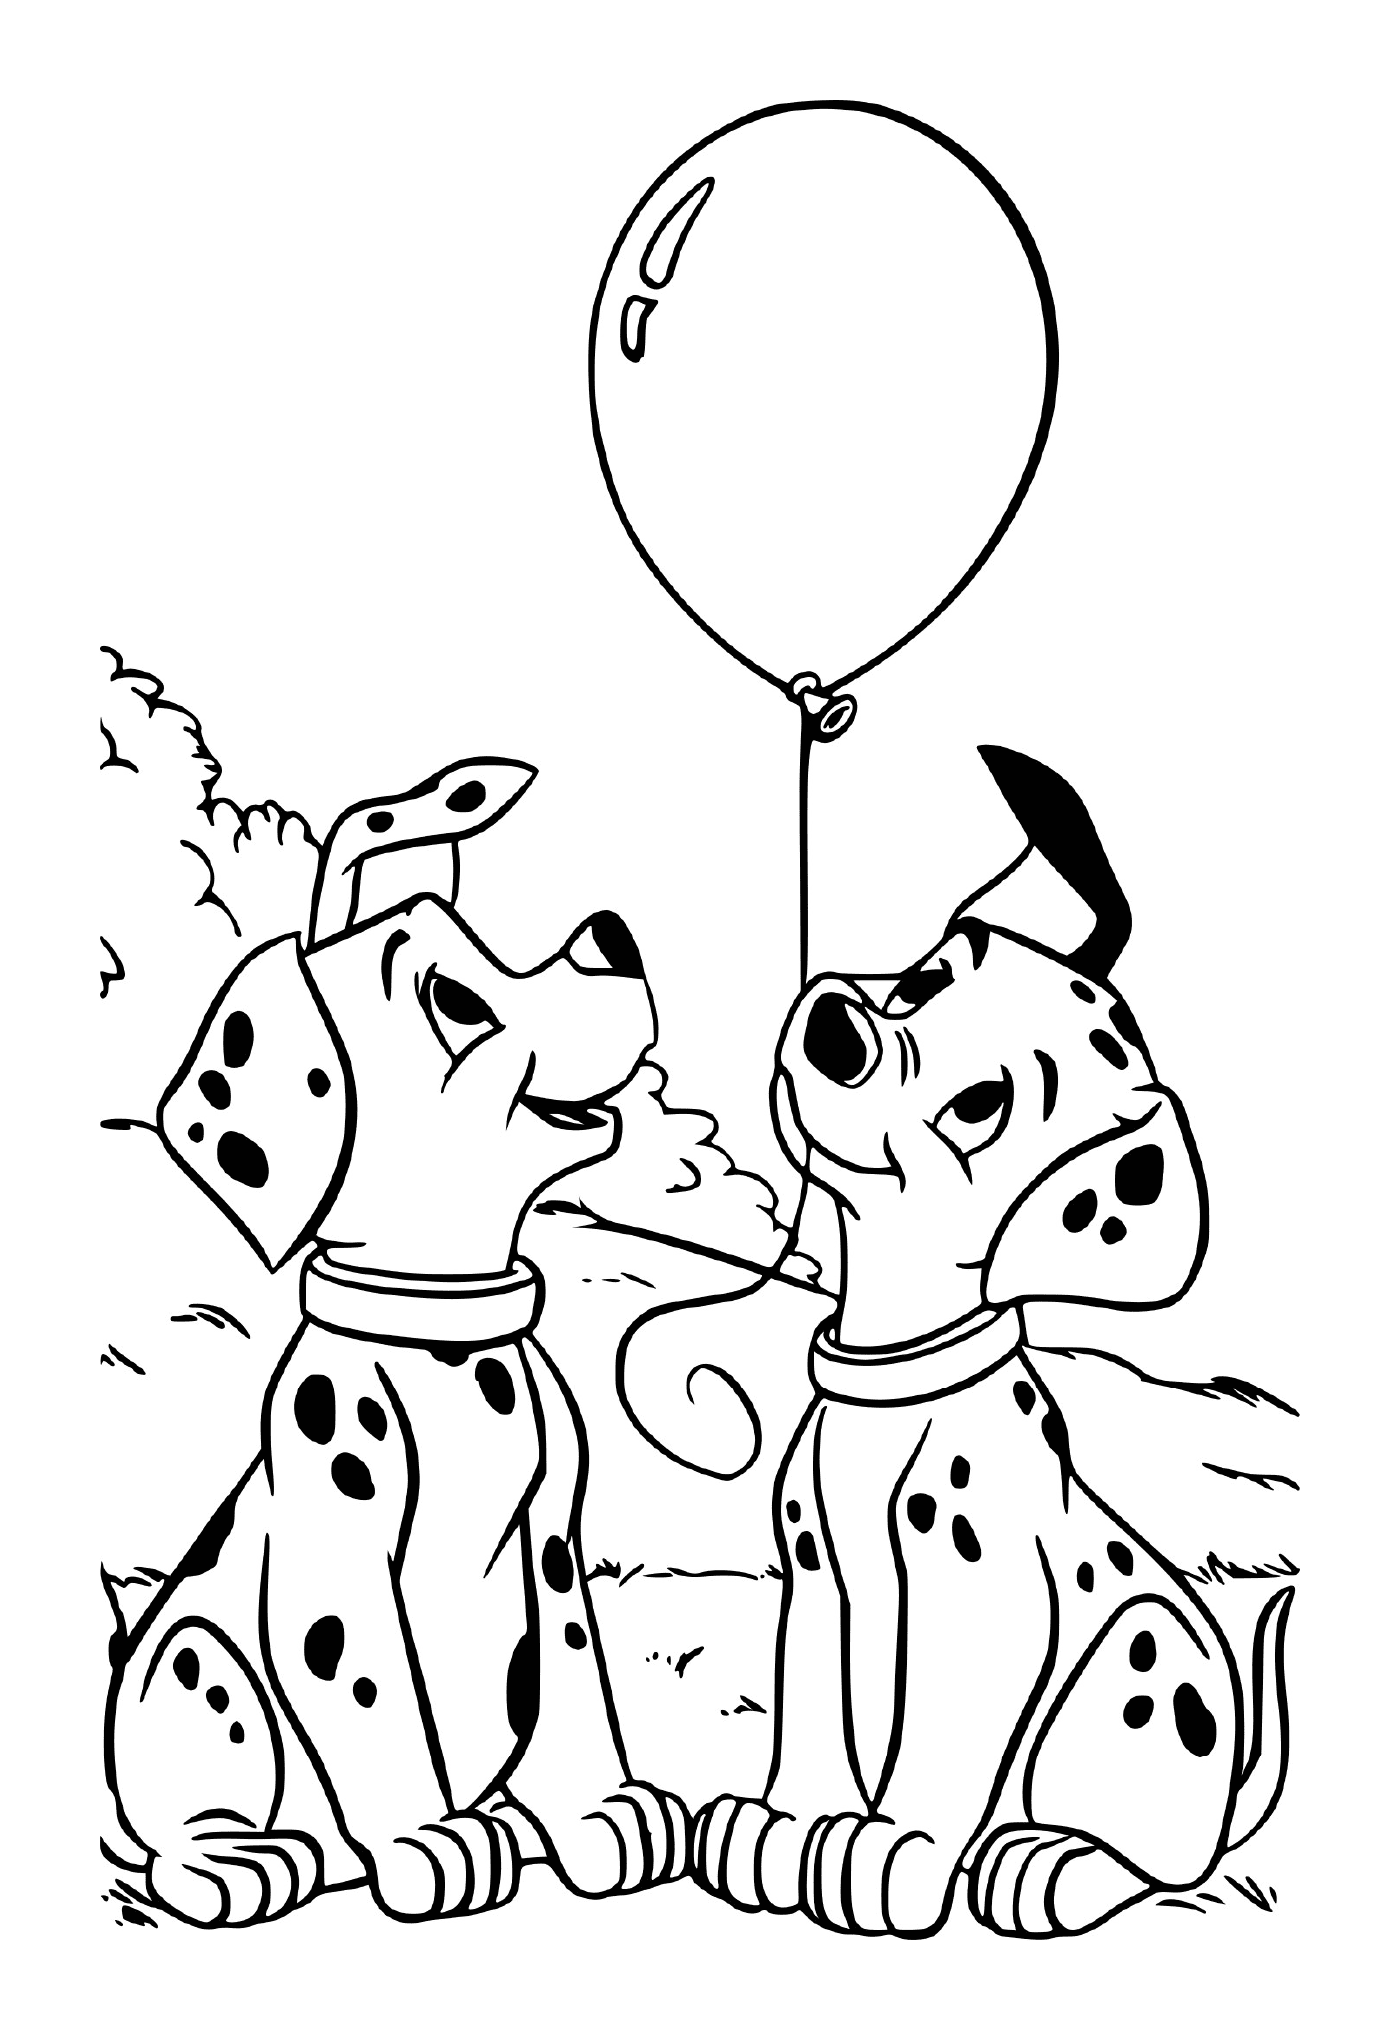   Deux dalmatiens regardent un ballon 